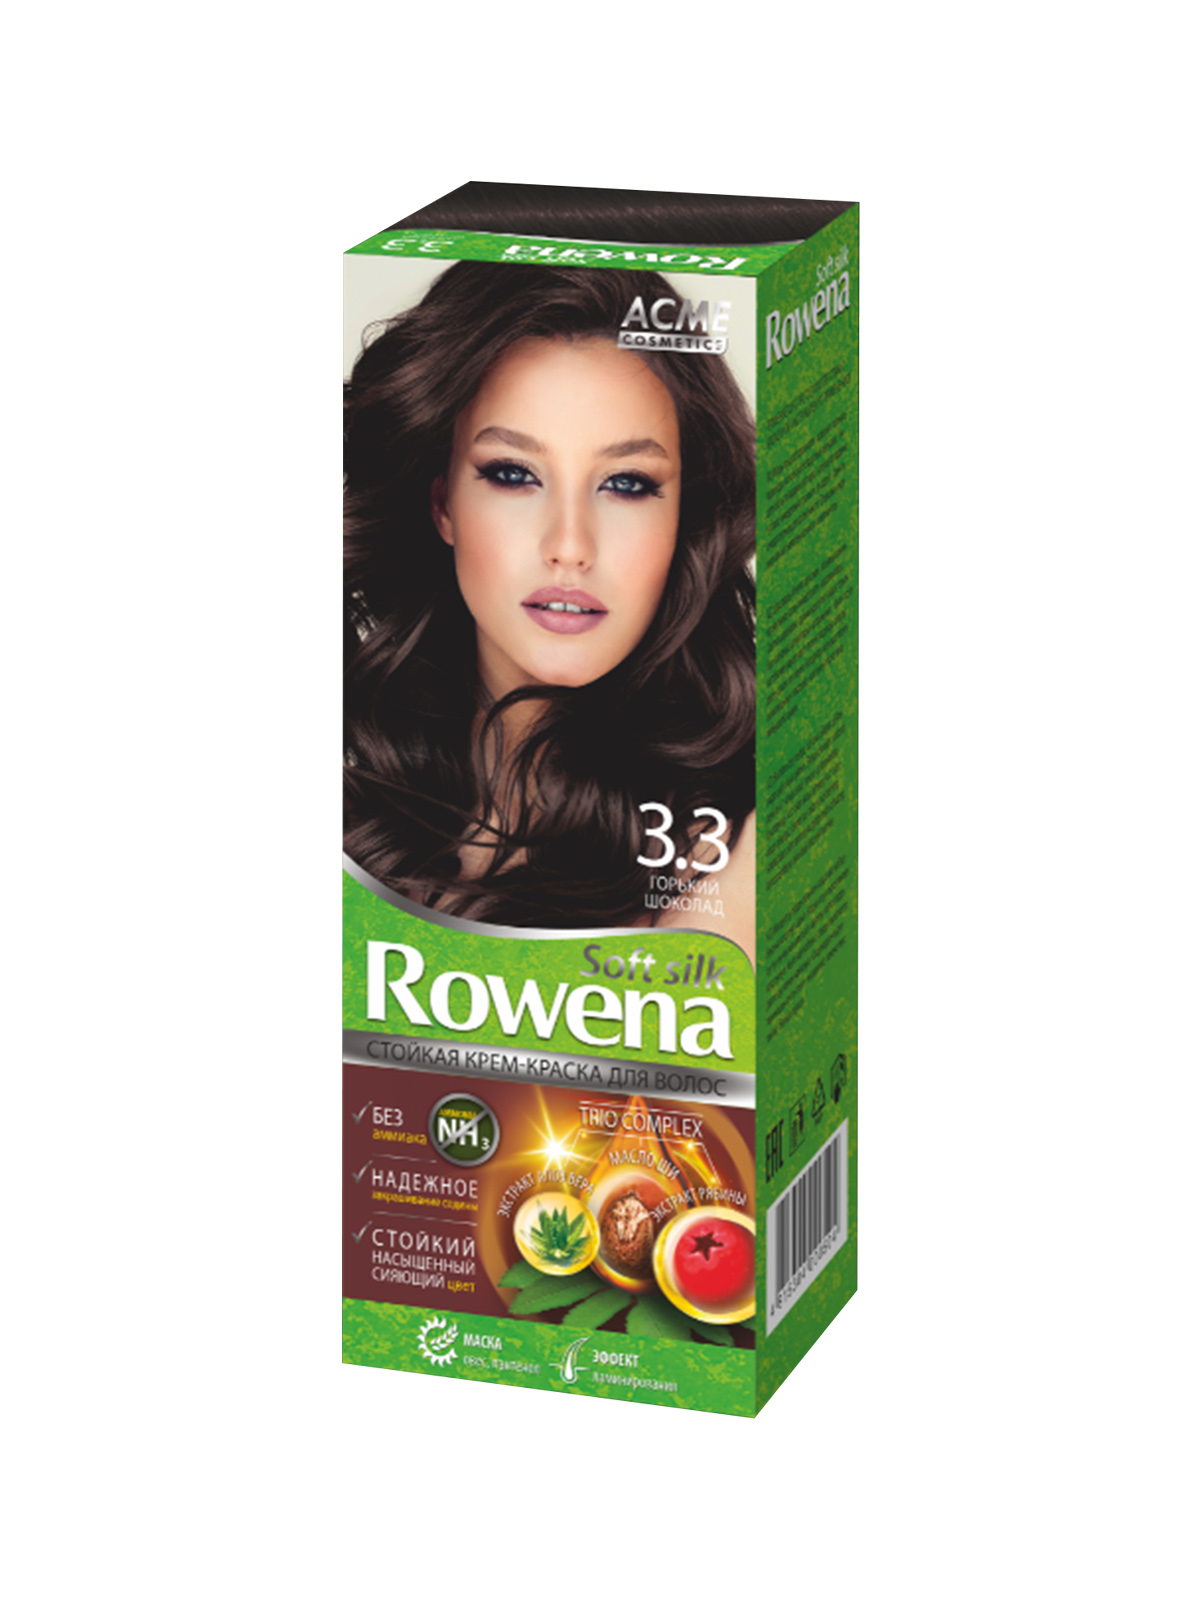 Стойкая крем-краска для волос Rowena soft silk тон 3.3 горький шоколад